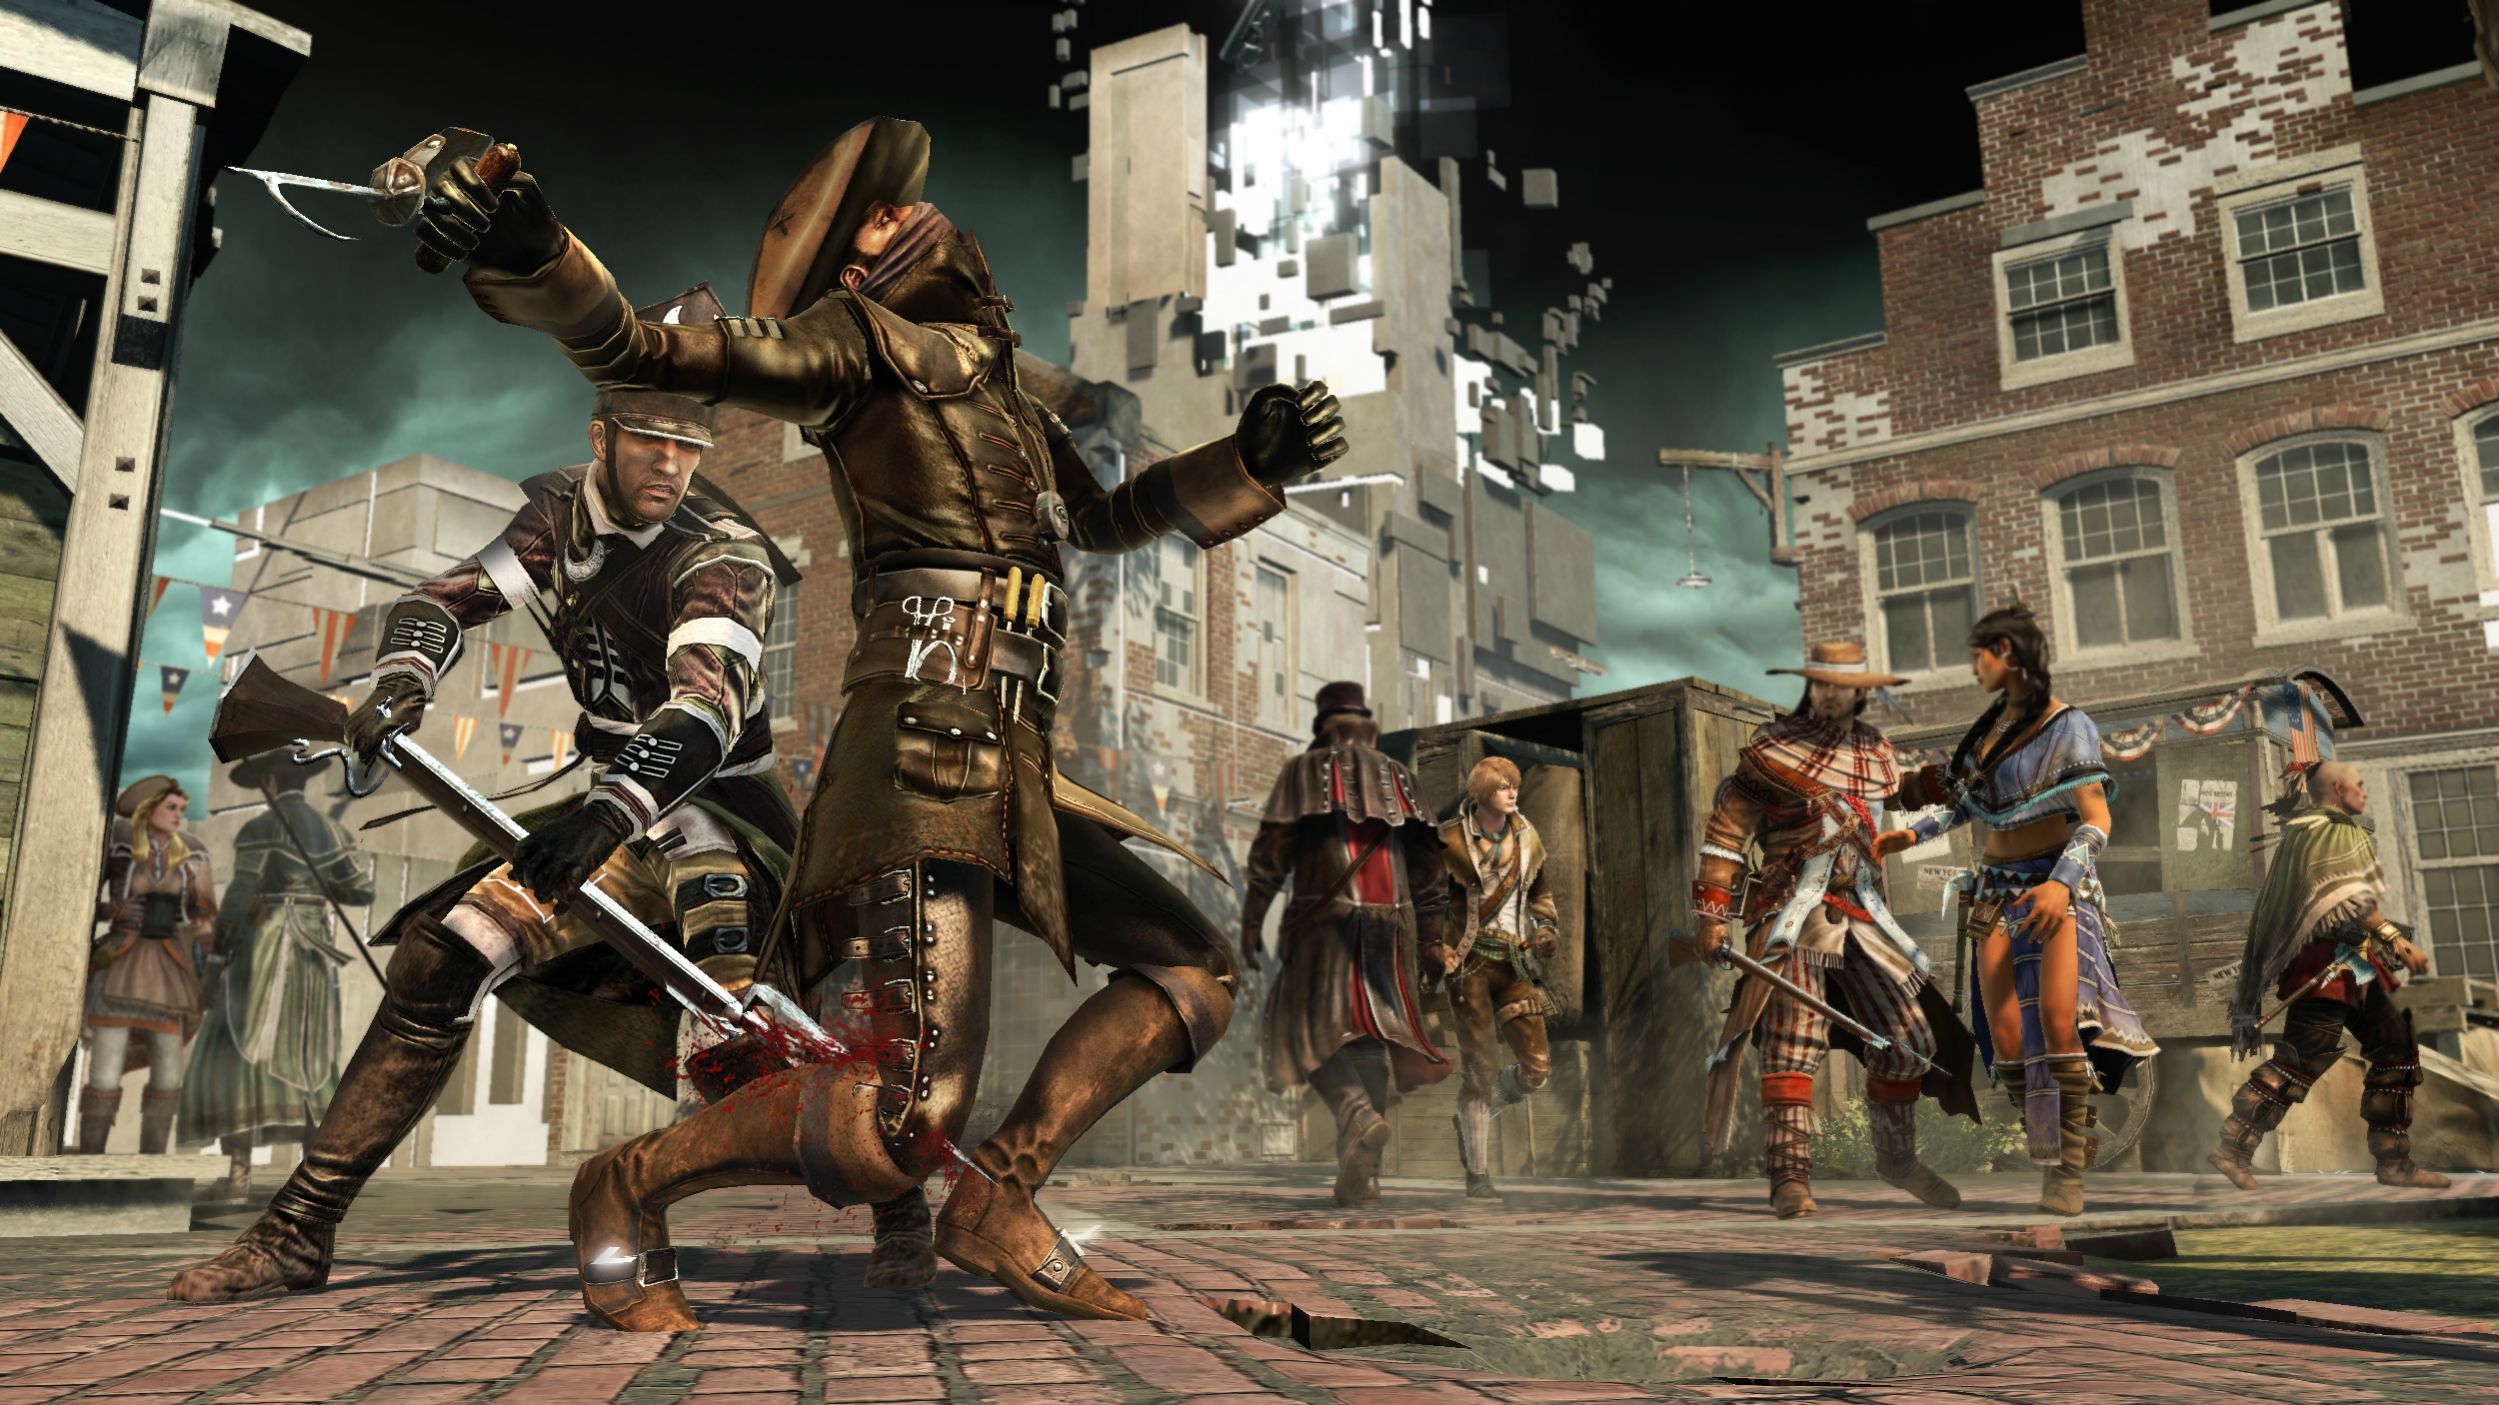 Скриншоты к игре Assassin's Creed III.